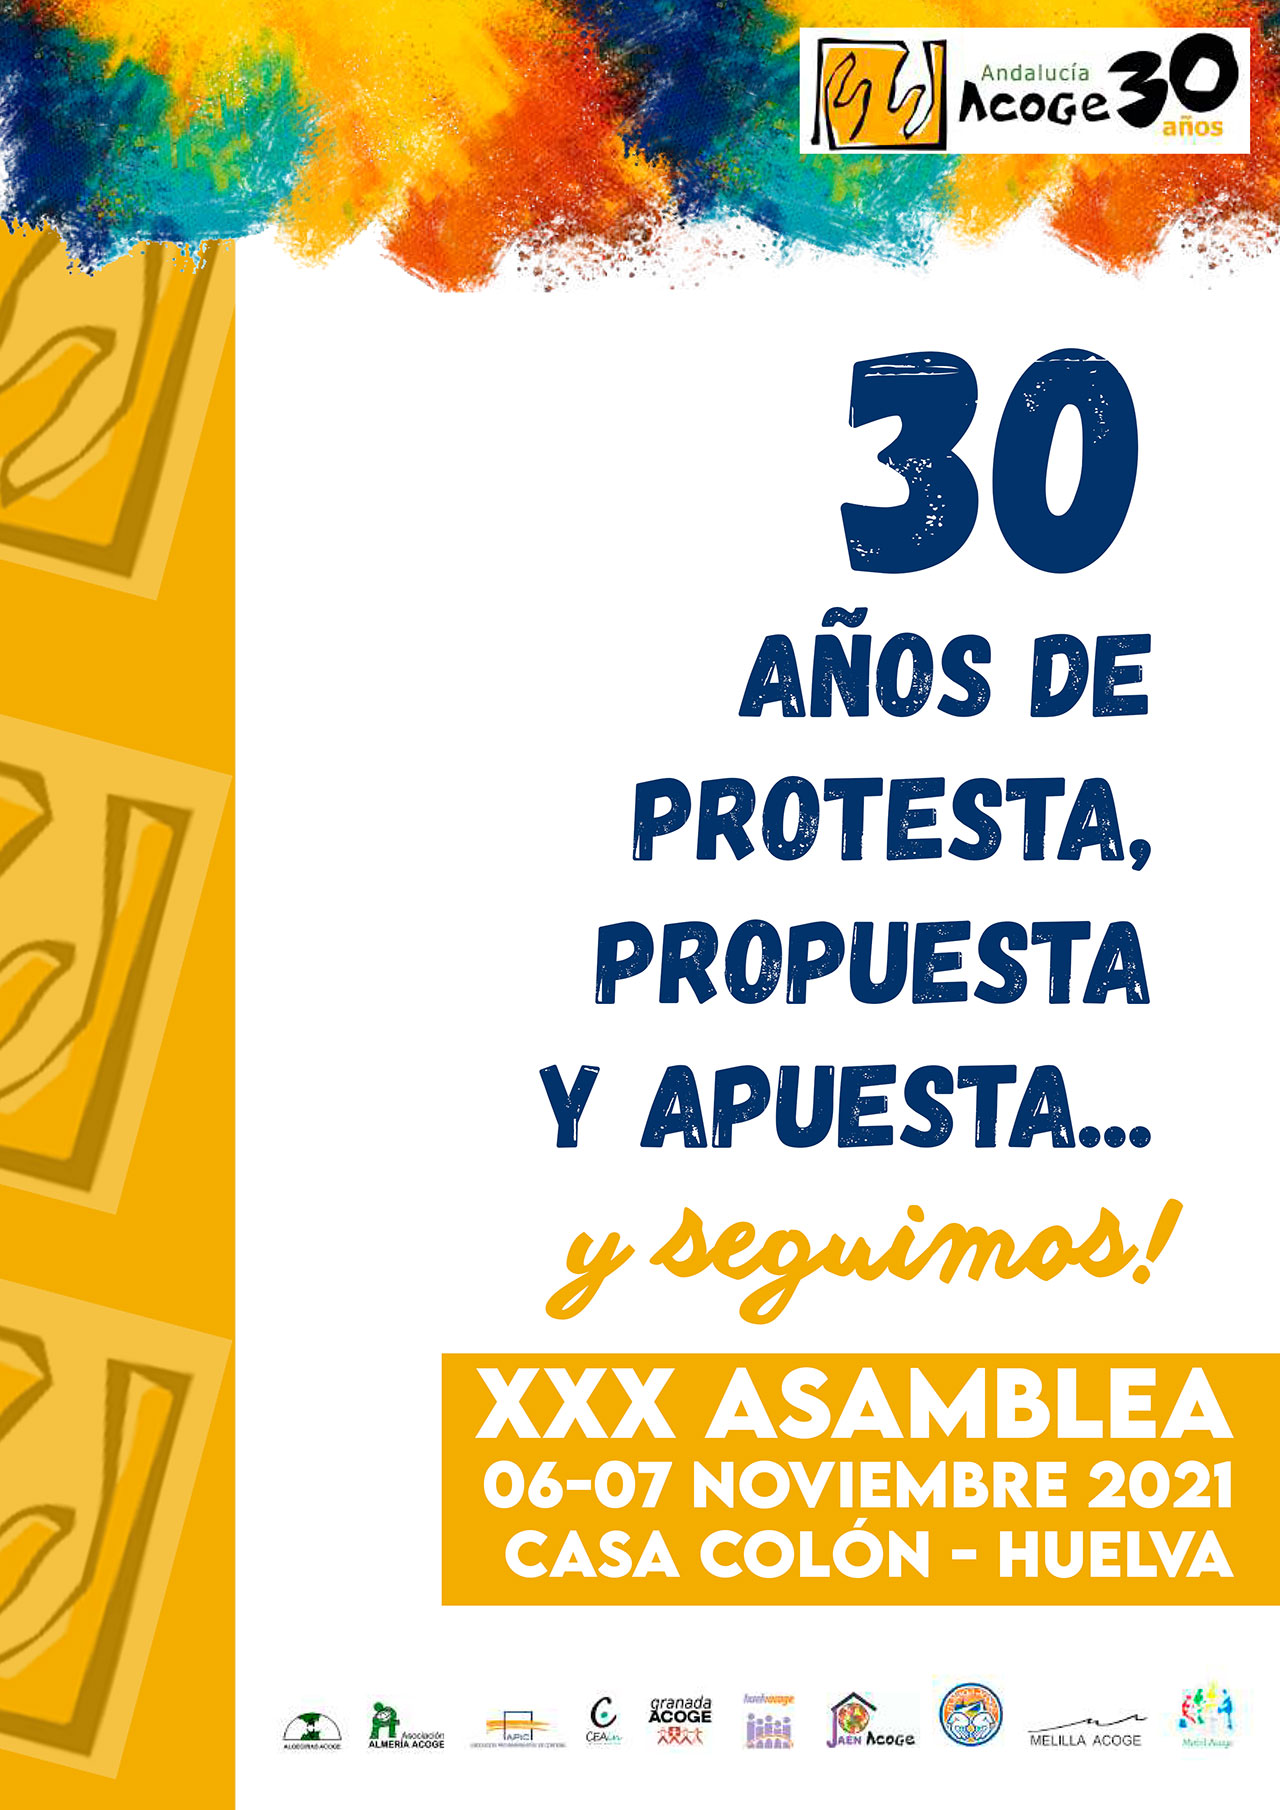 Andalucía Acoge celebrará este fin de semana en Huelva su XXX Asamblea General Extraordinaria